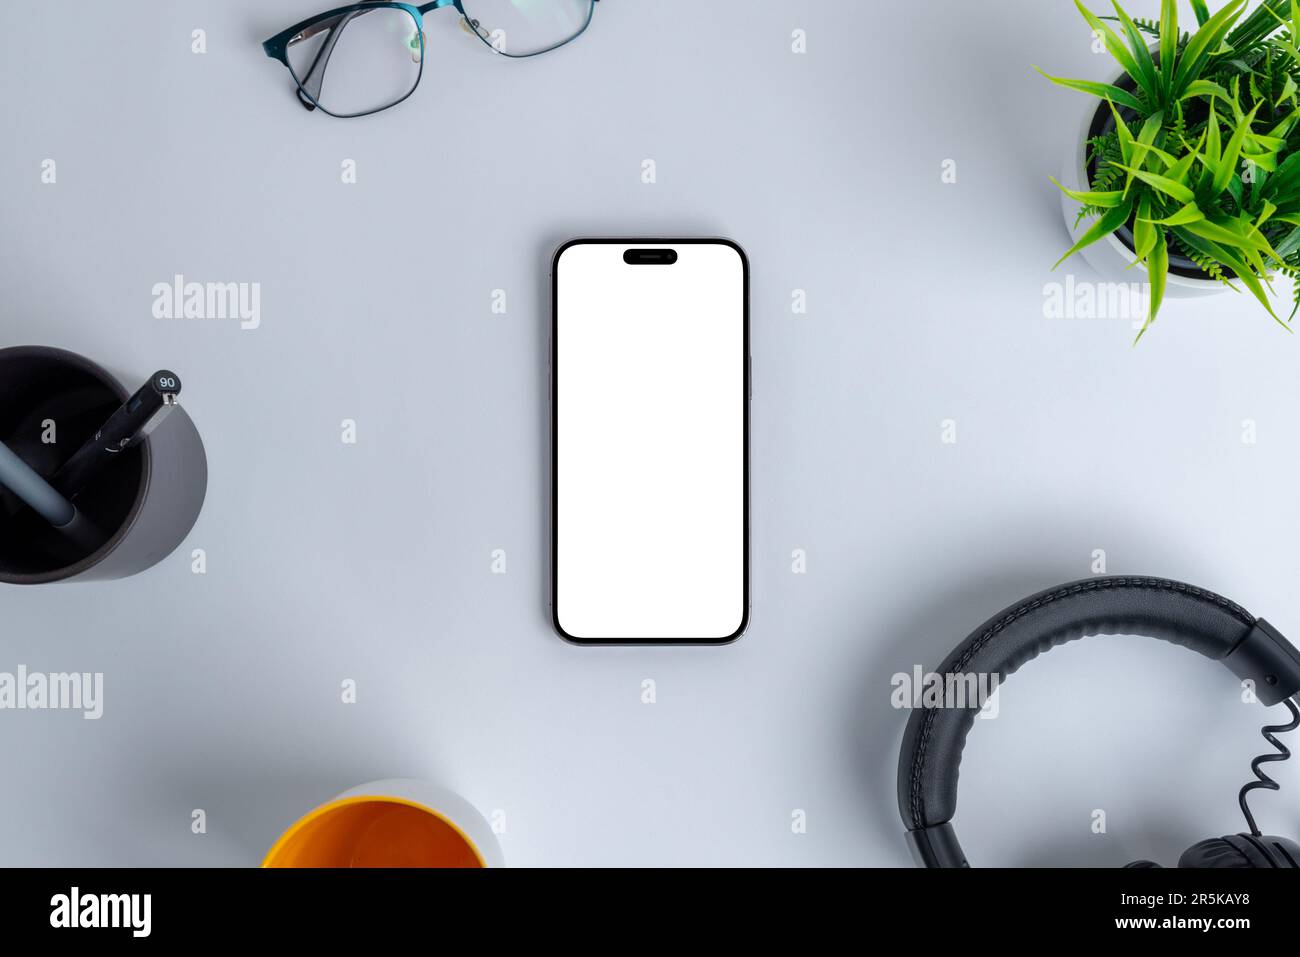 Moderne Arbeitsumgebung mit einem leeren Telefonbildschirm, der zur Nachahmung ausgelegt ist und sich zwischen Büroutensilien wie Headset, Pflanze, Brille, Kugelschreiber und Kaffee befindet Stockfoto